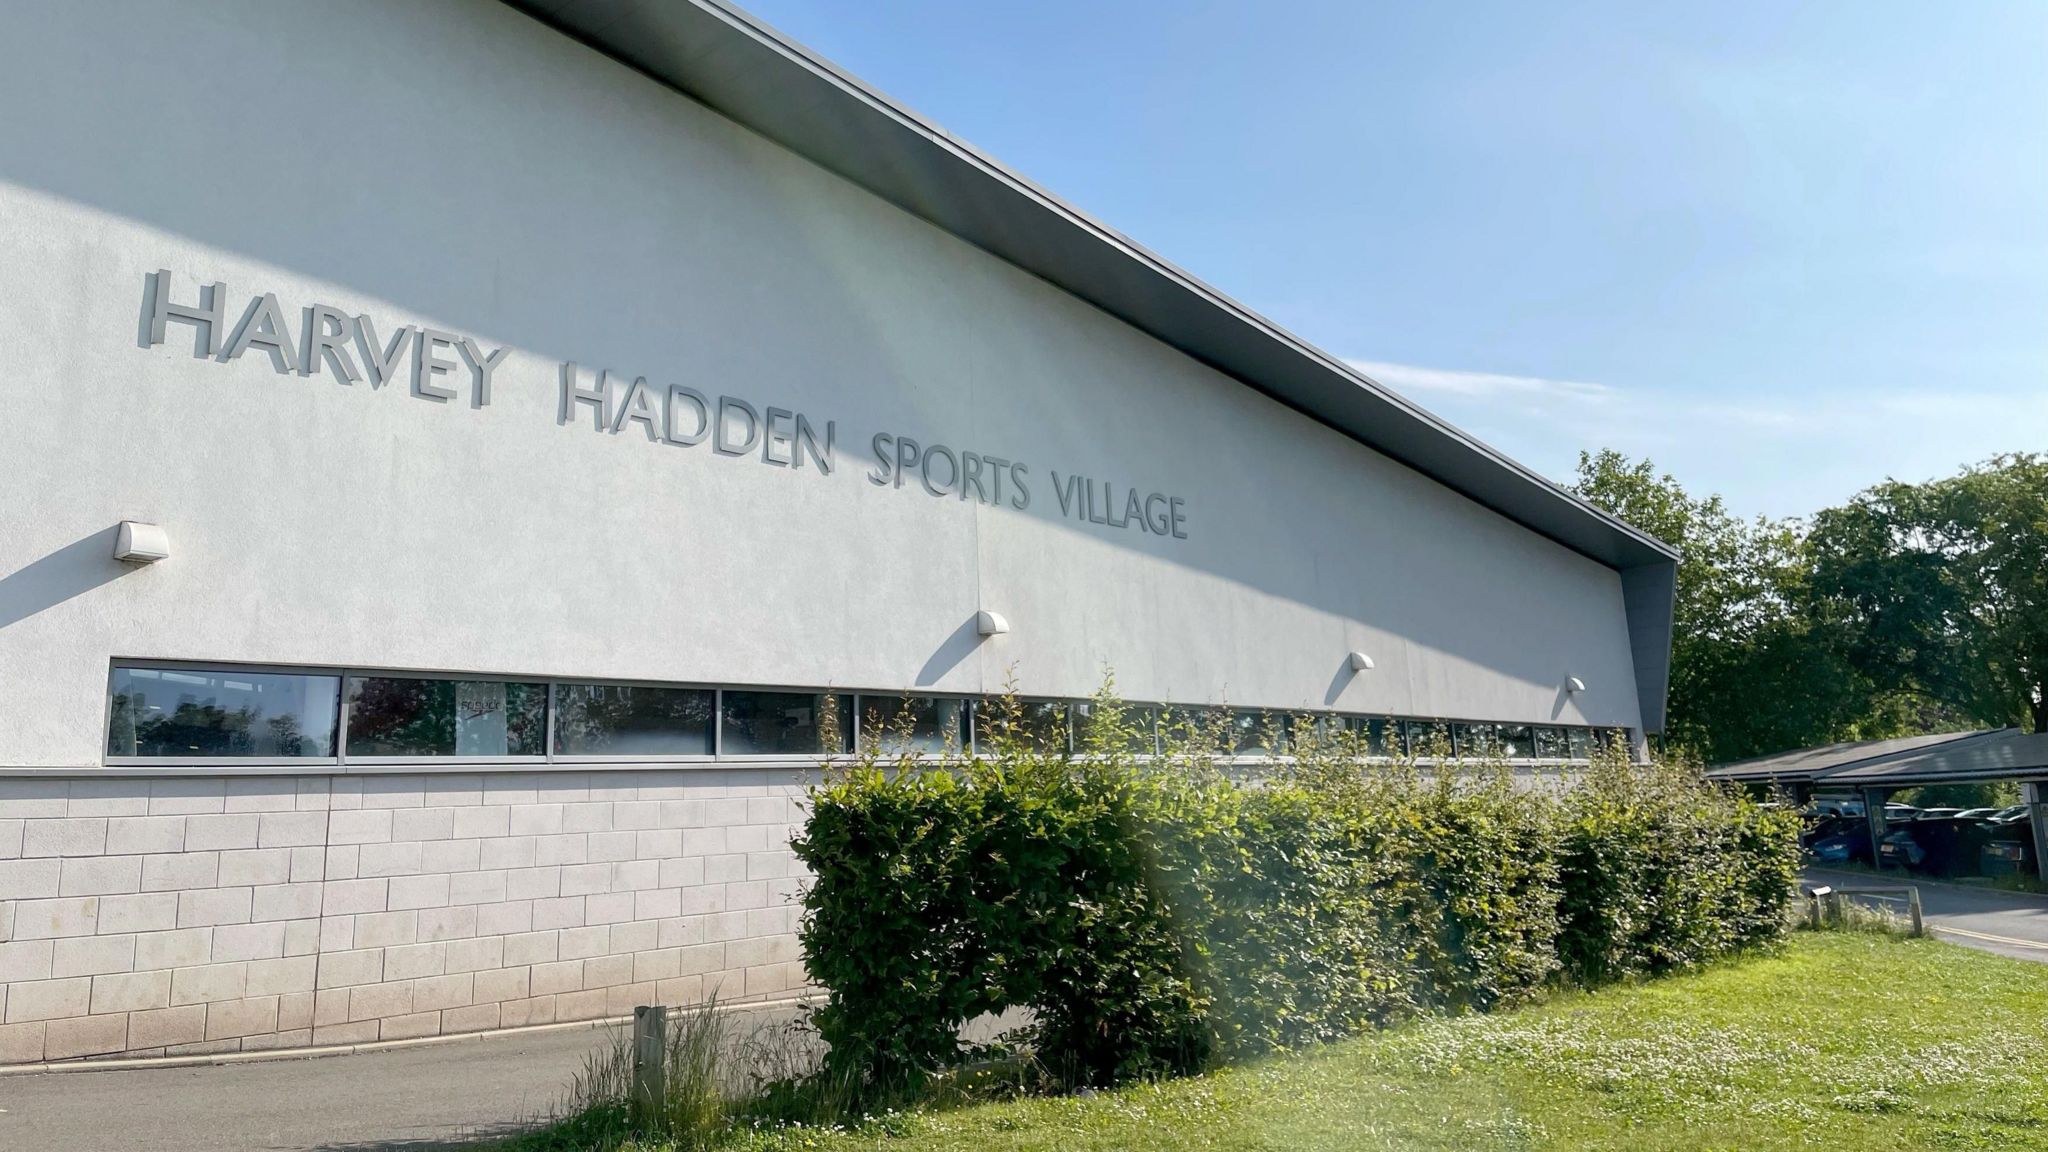 Harvey Hadden Sports Village